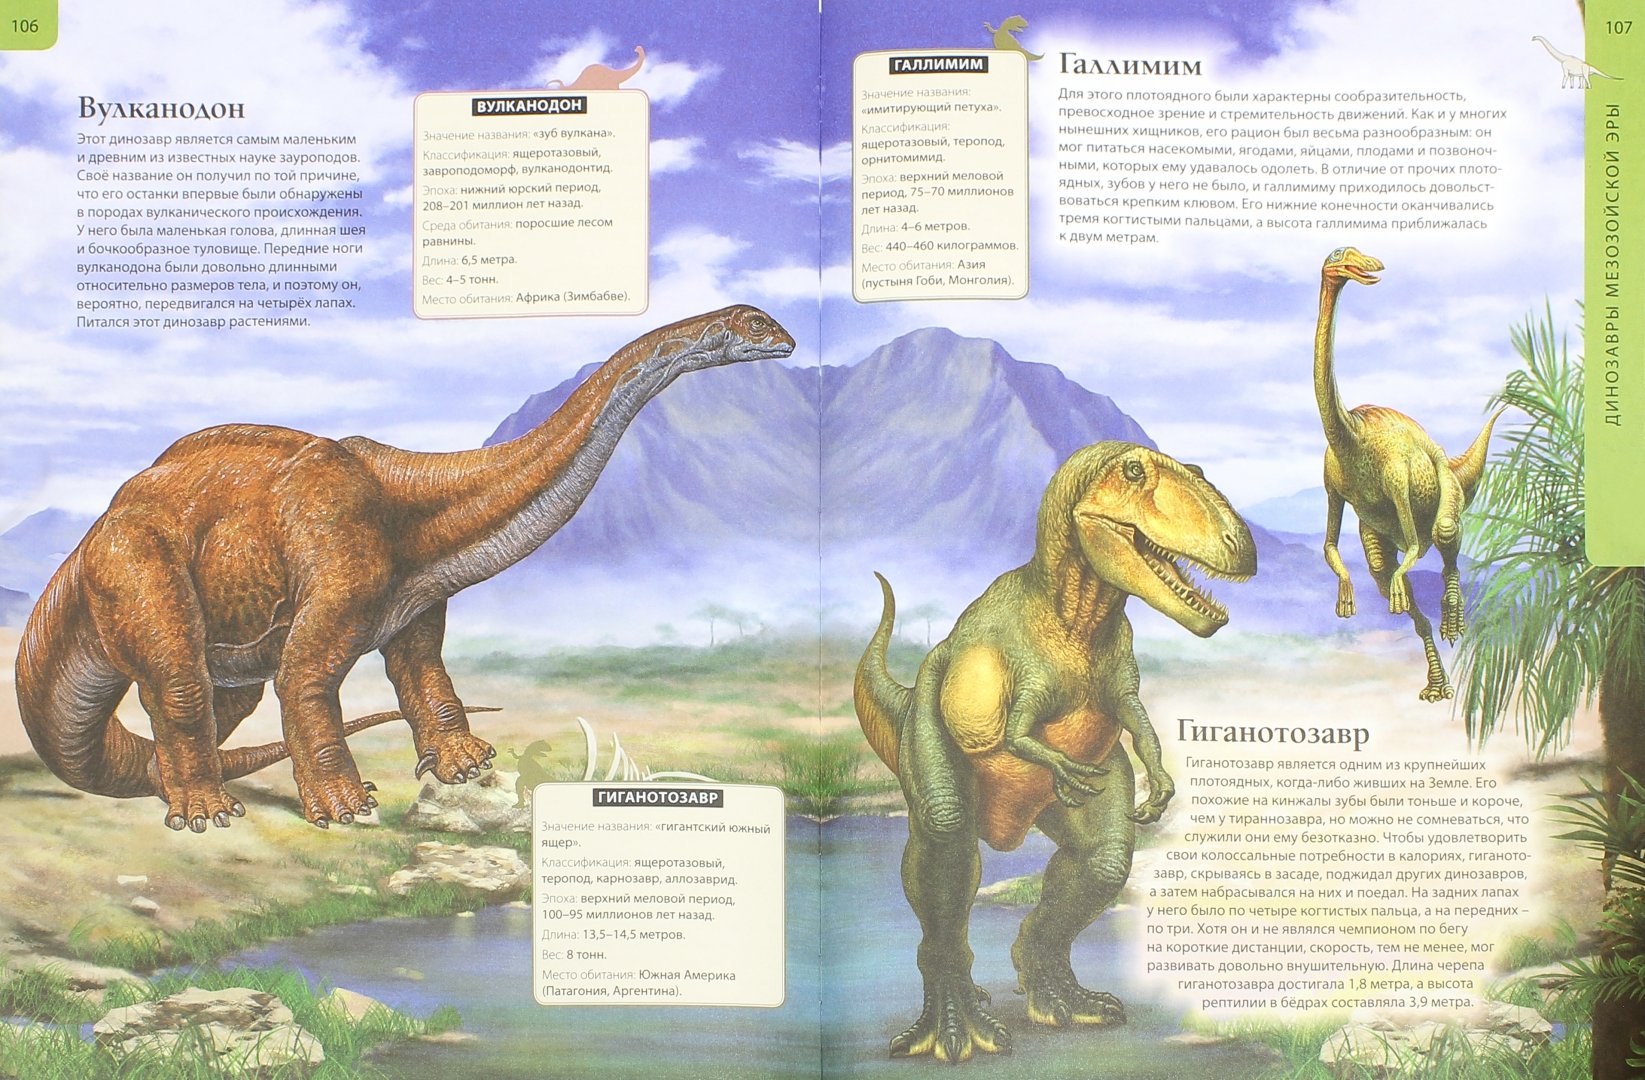 Иллюстрация 1 из 8 для Всё о динозаврах. Иллюстрированная энциклопедия | Лабиринт - книги. Источник: Лабиринт